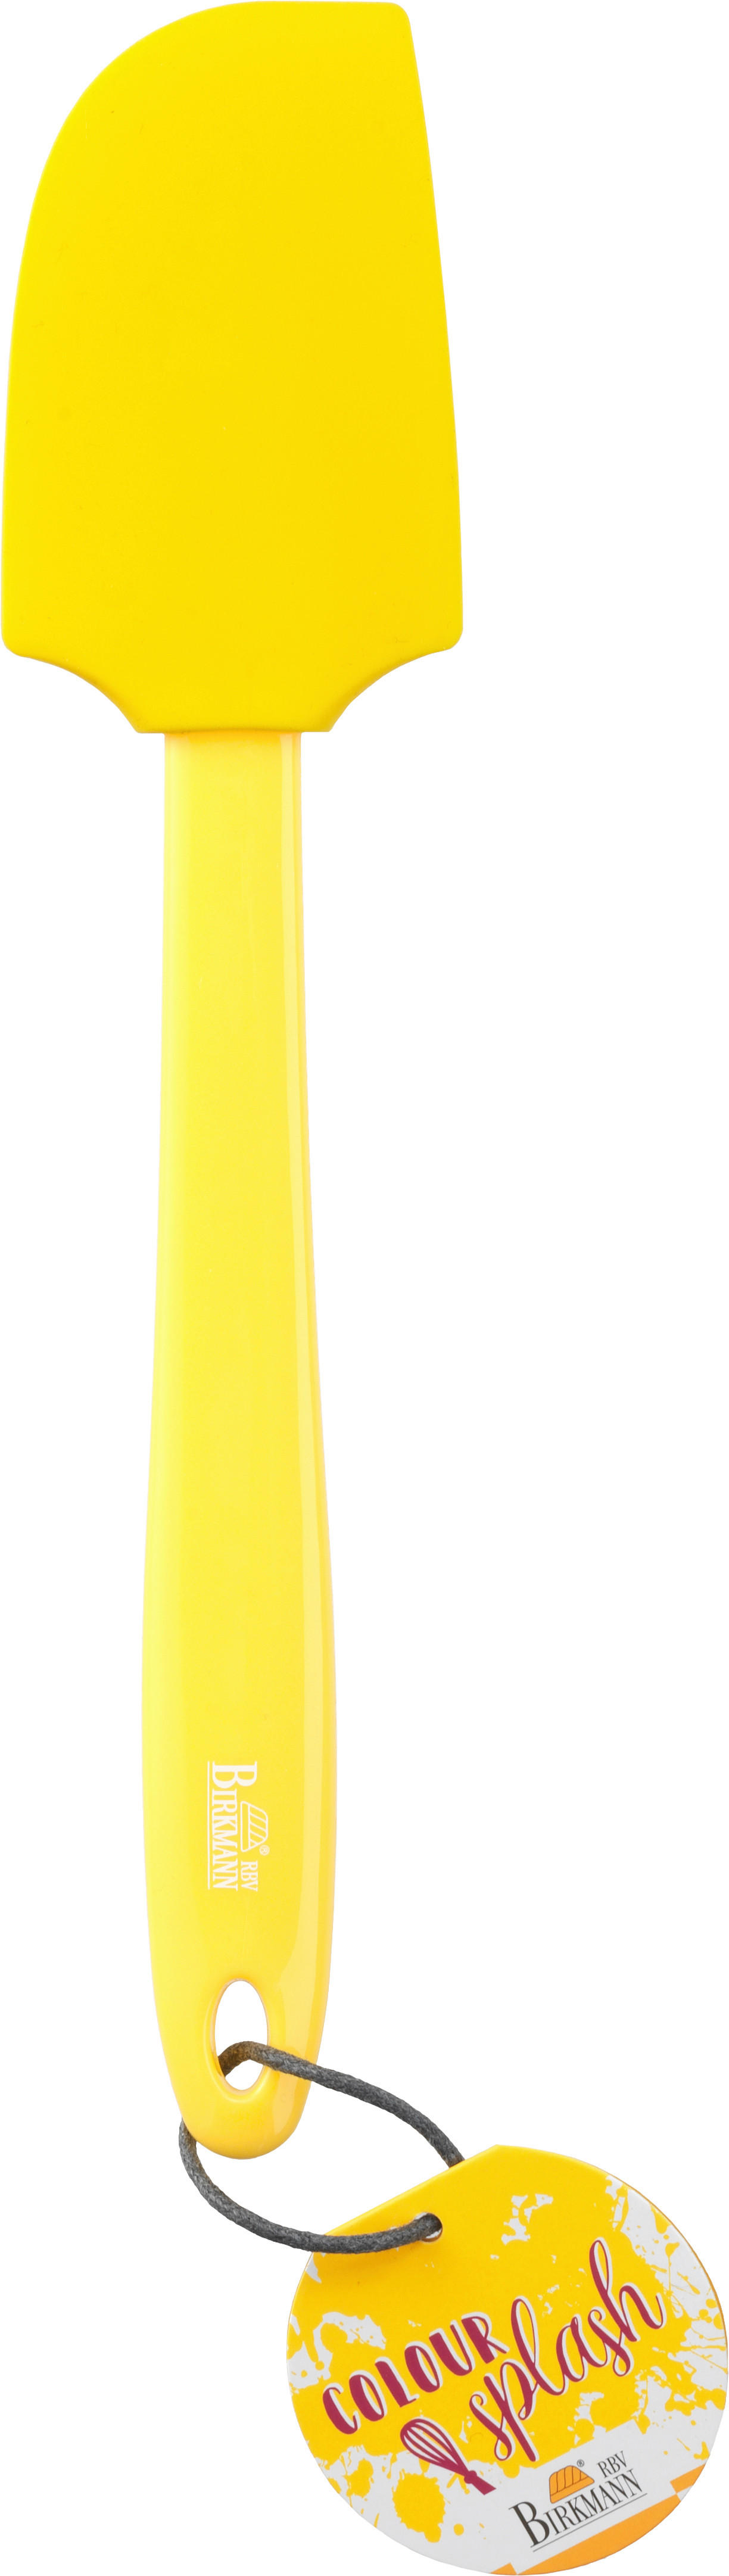 TEIGSCHABER - Gelb, Basics, Kunststoff (6/29cm) - Birkmann